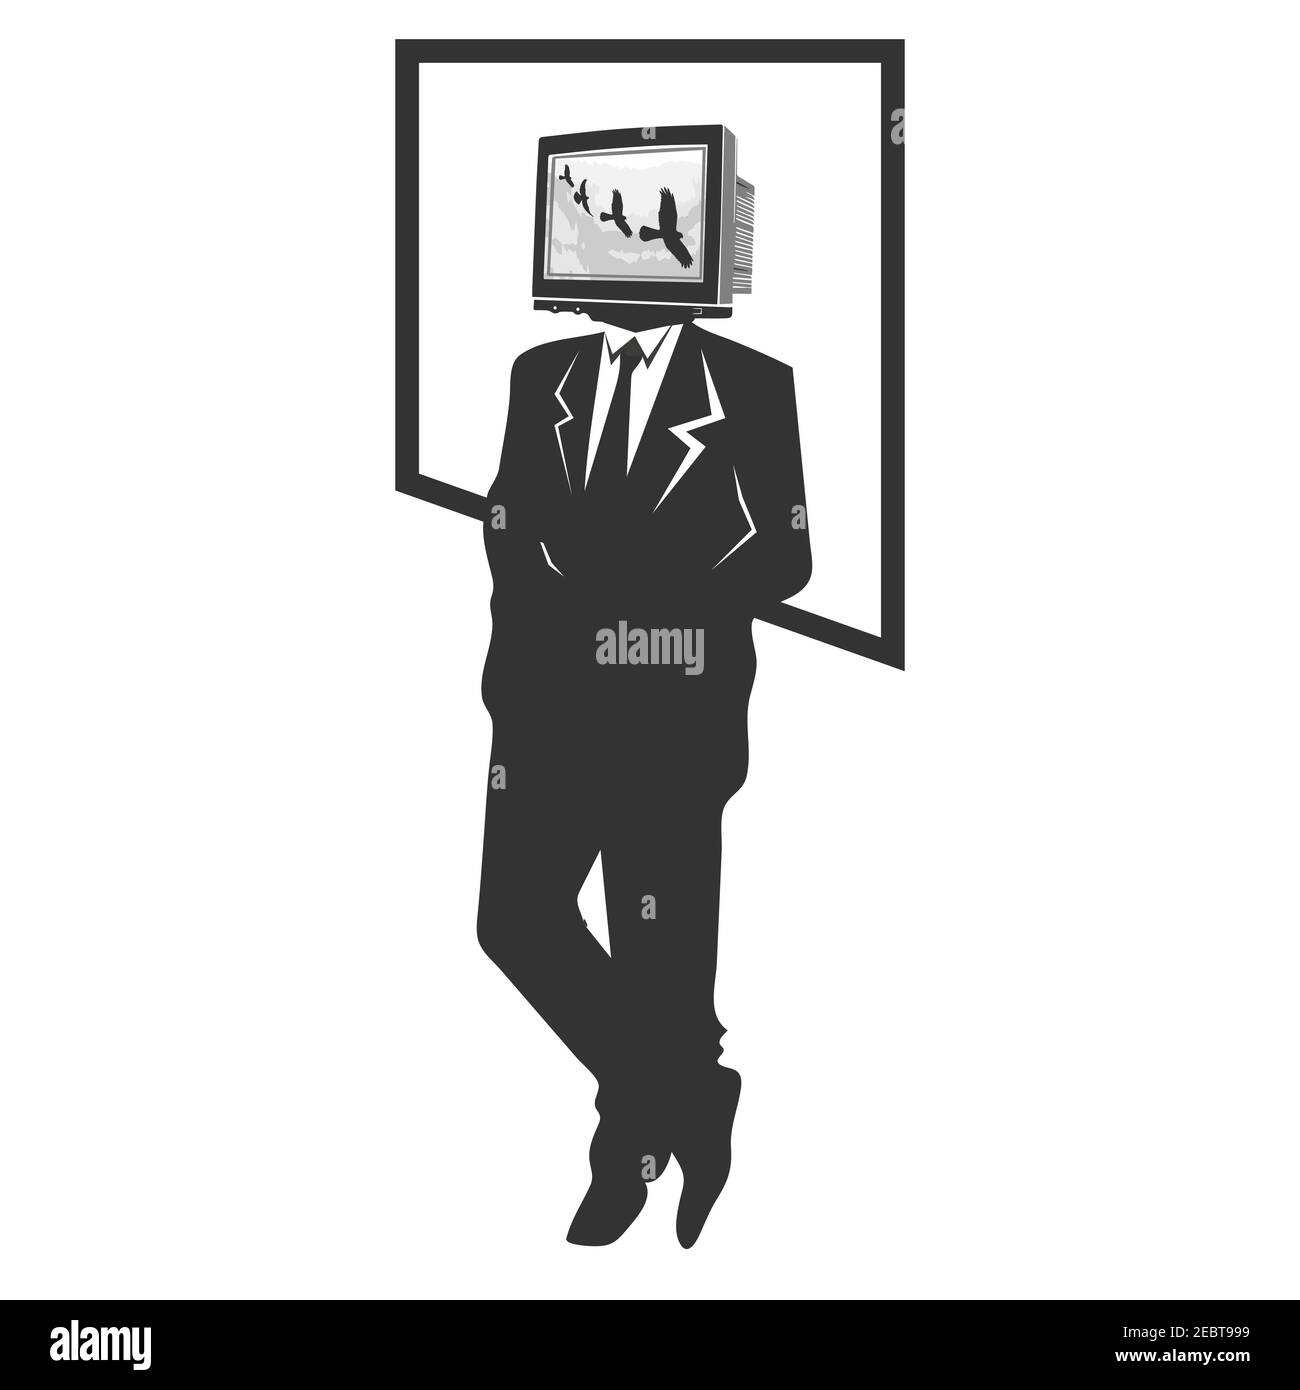 Mann mit TV-Kopf in tv-sucht-Konzept auf der schwarz-weiß-Stil. Vektorgrafik EPS,8 EPS,10 Stock Vektor